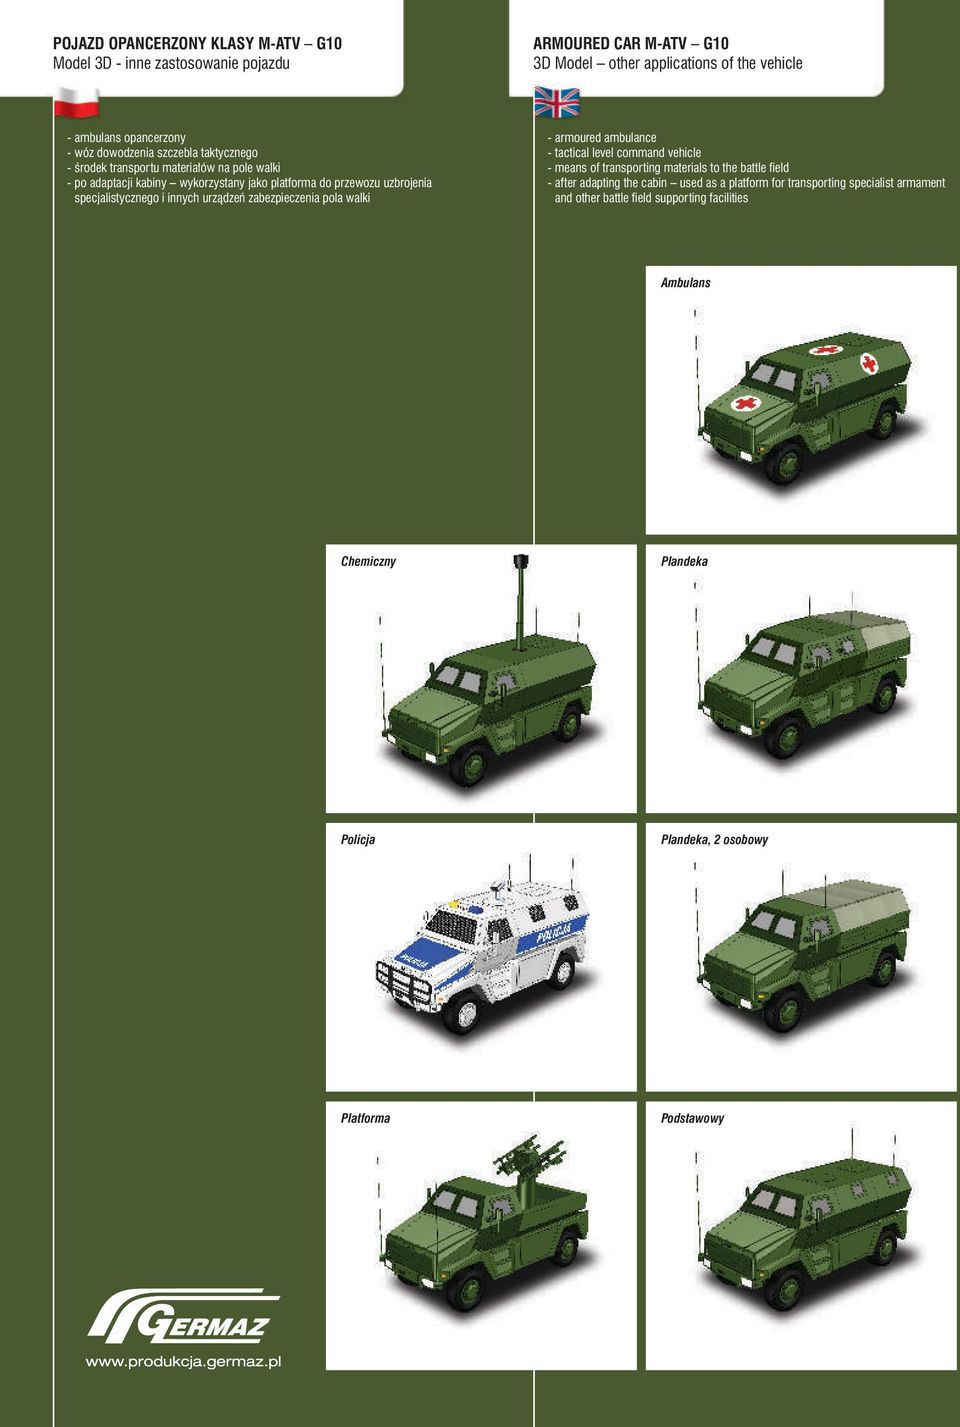 specjalistycznegoinychurządzeńzabezpieczeniapolawalki -armouredambulance -tacticalevelcomandvehicle